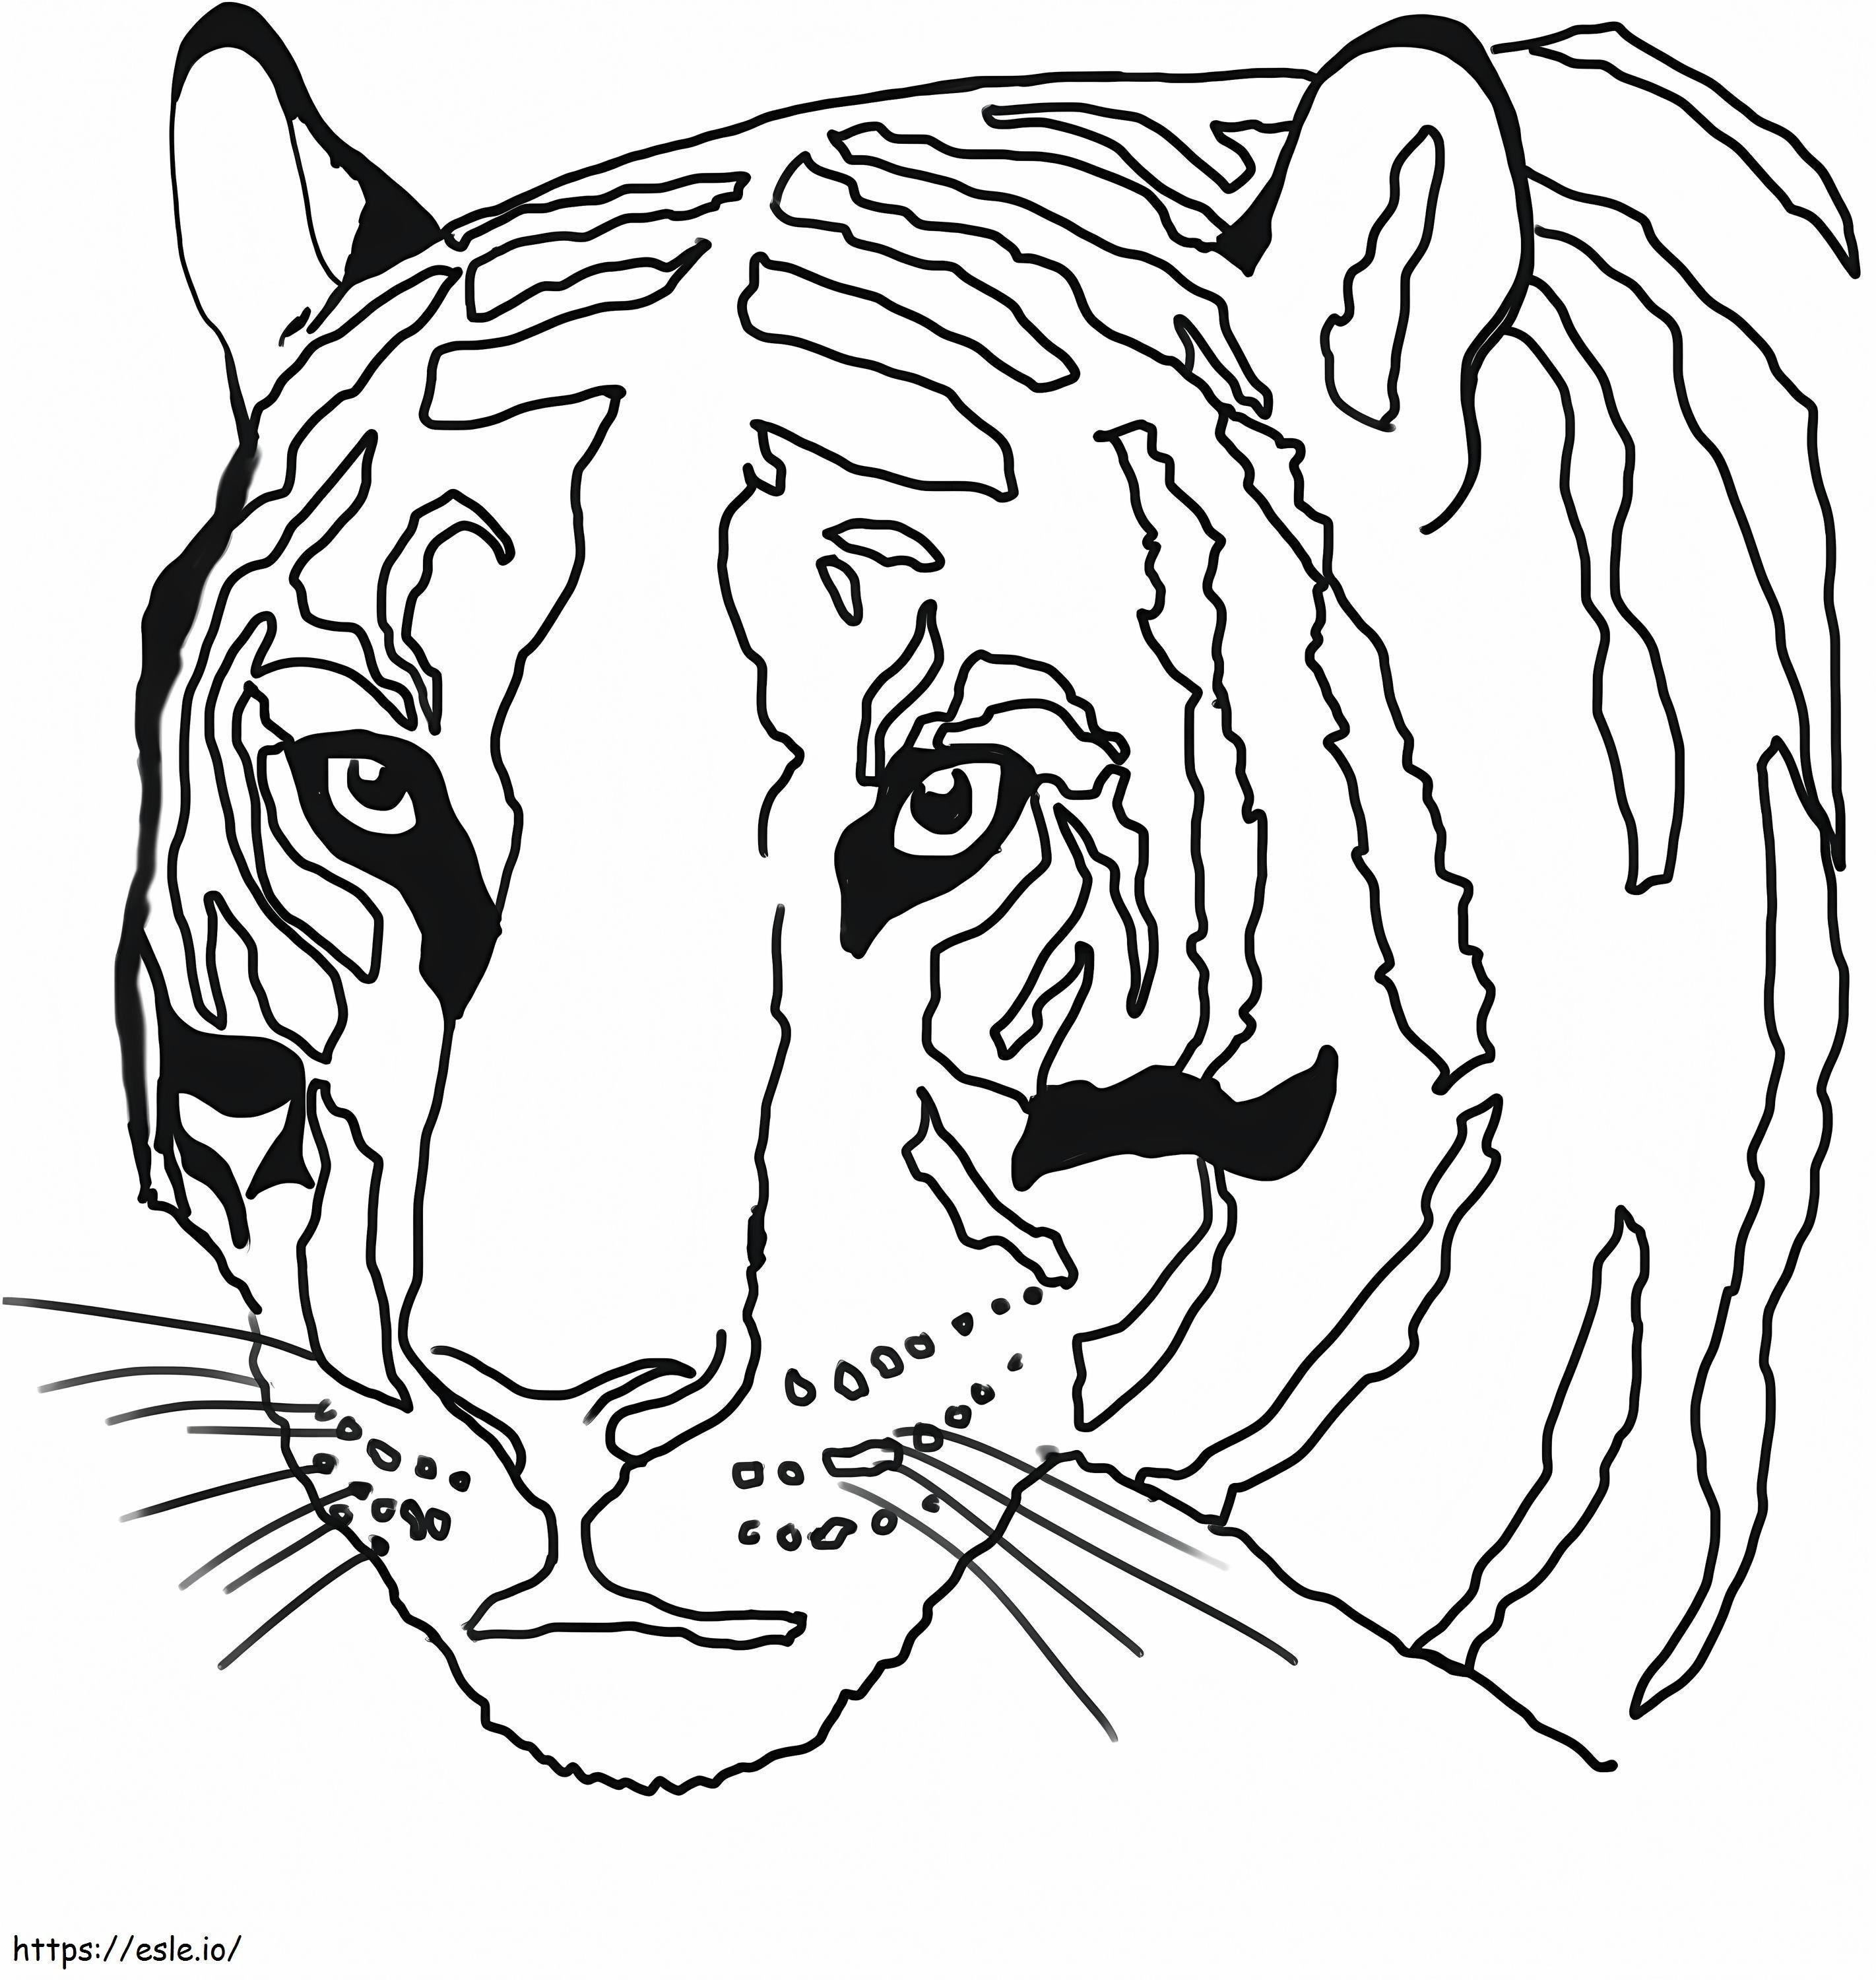 Tiger Head coloring page